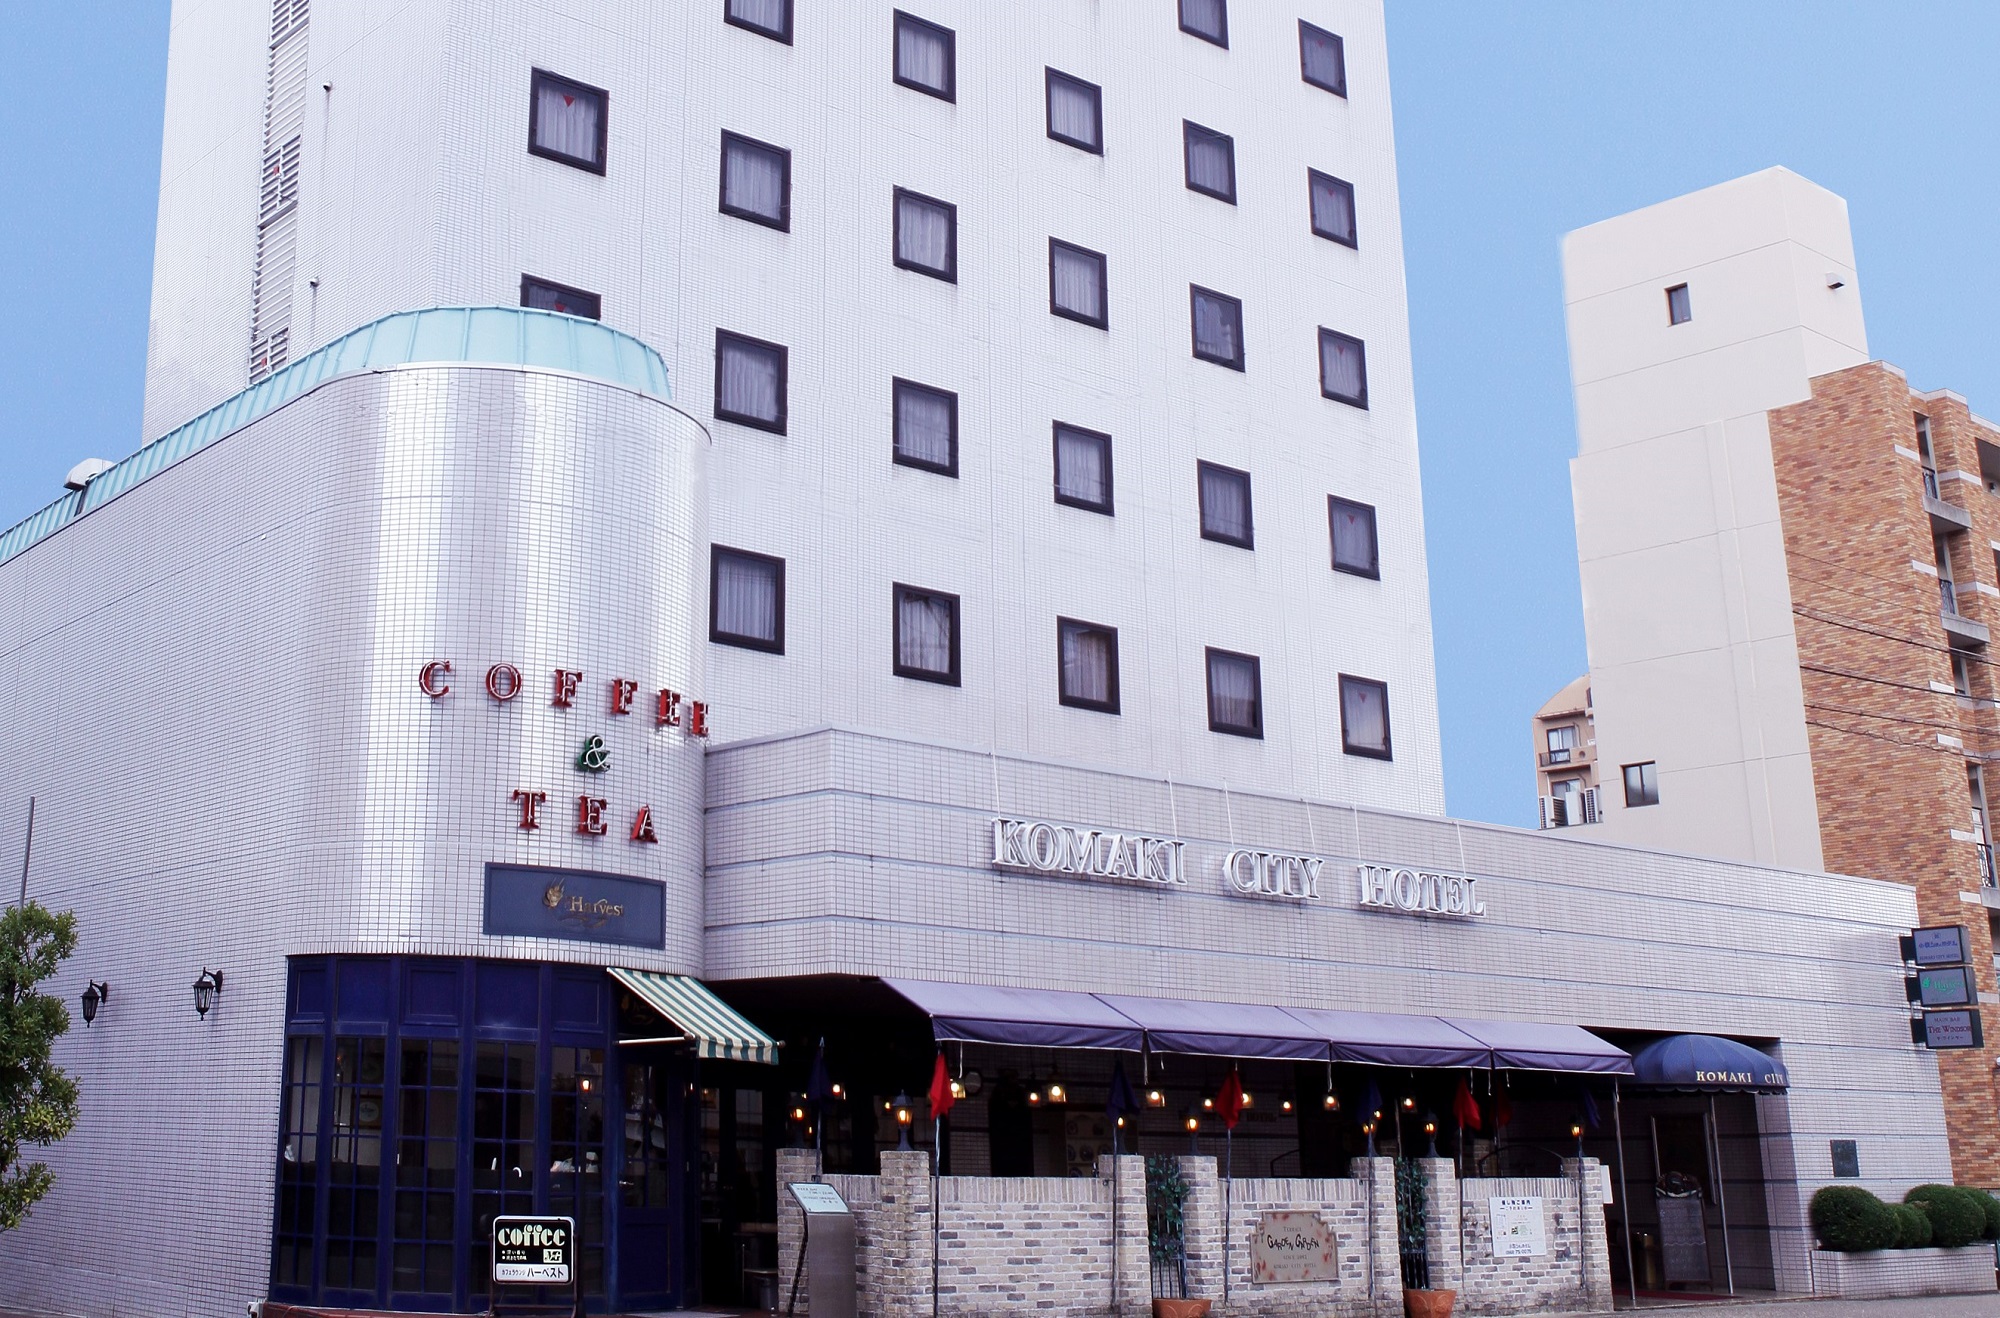 Komaki City Hotel by Le Lac Hotel